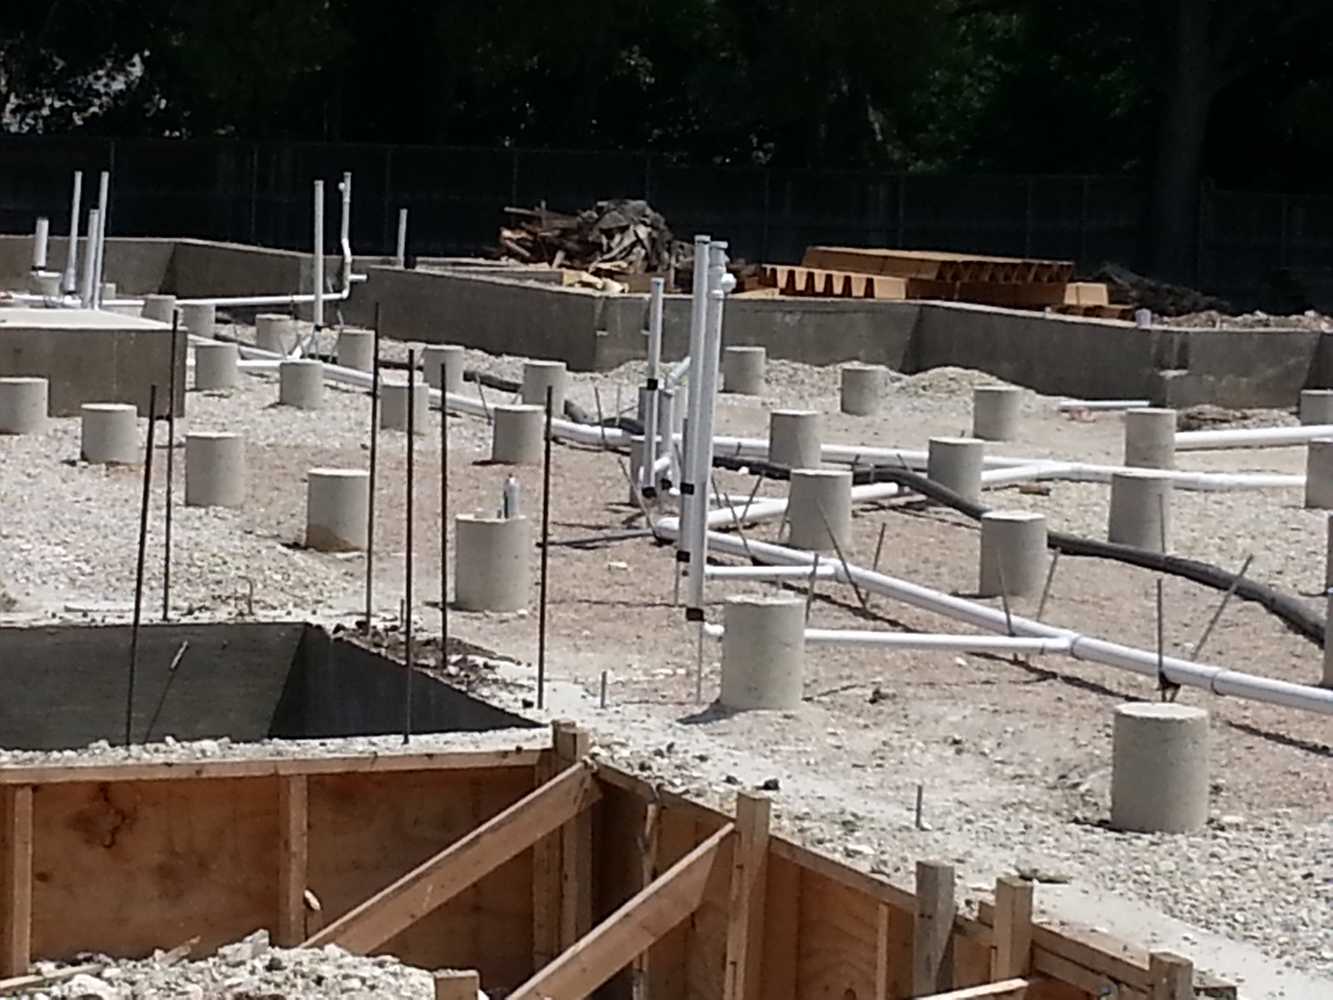 More photos from Barrientos Concrete Construction